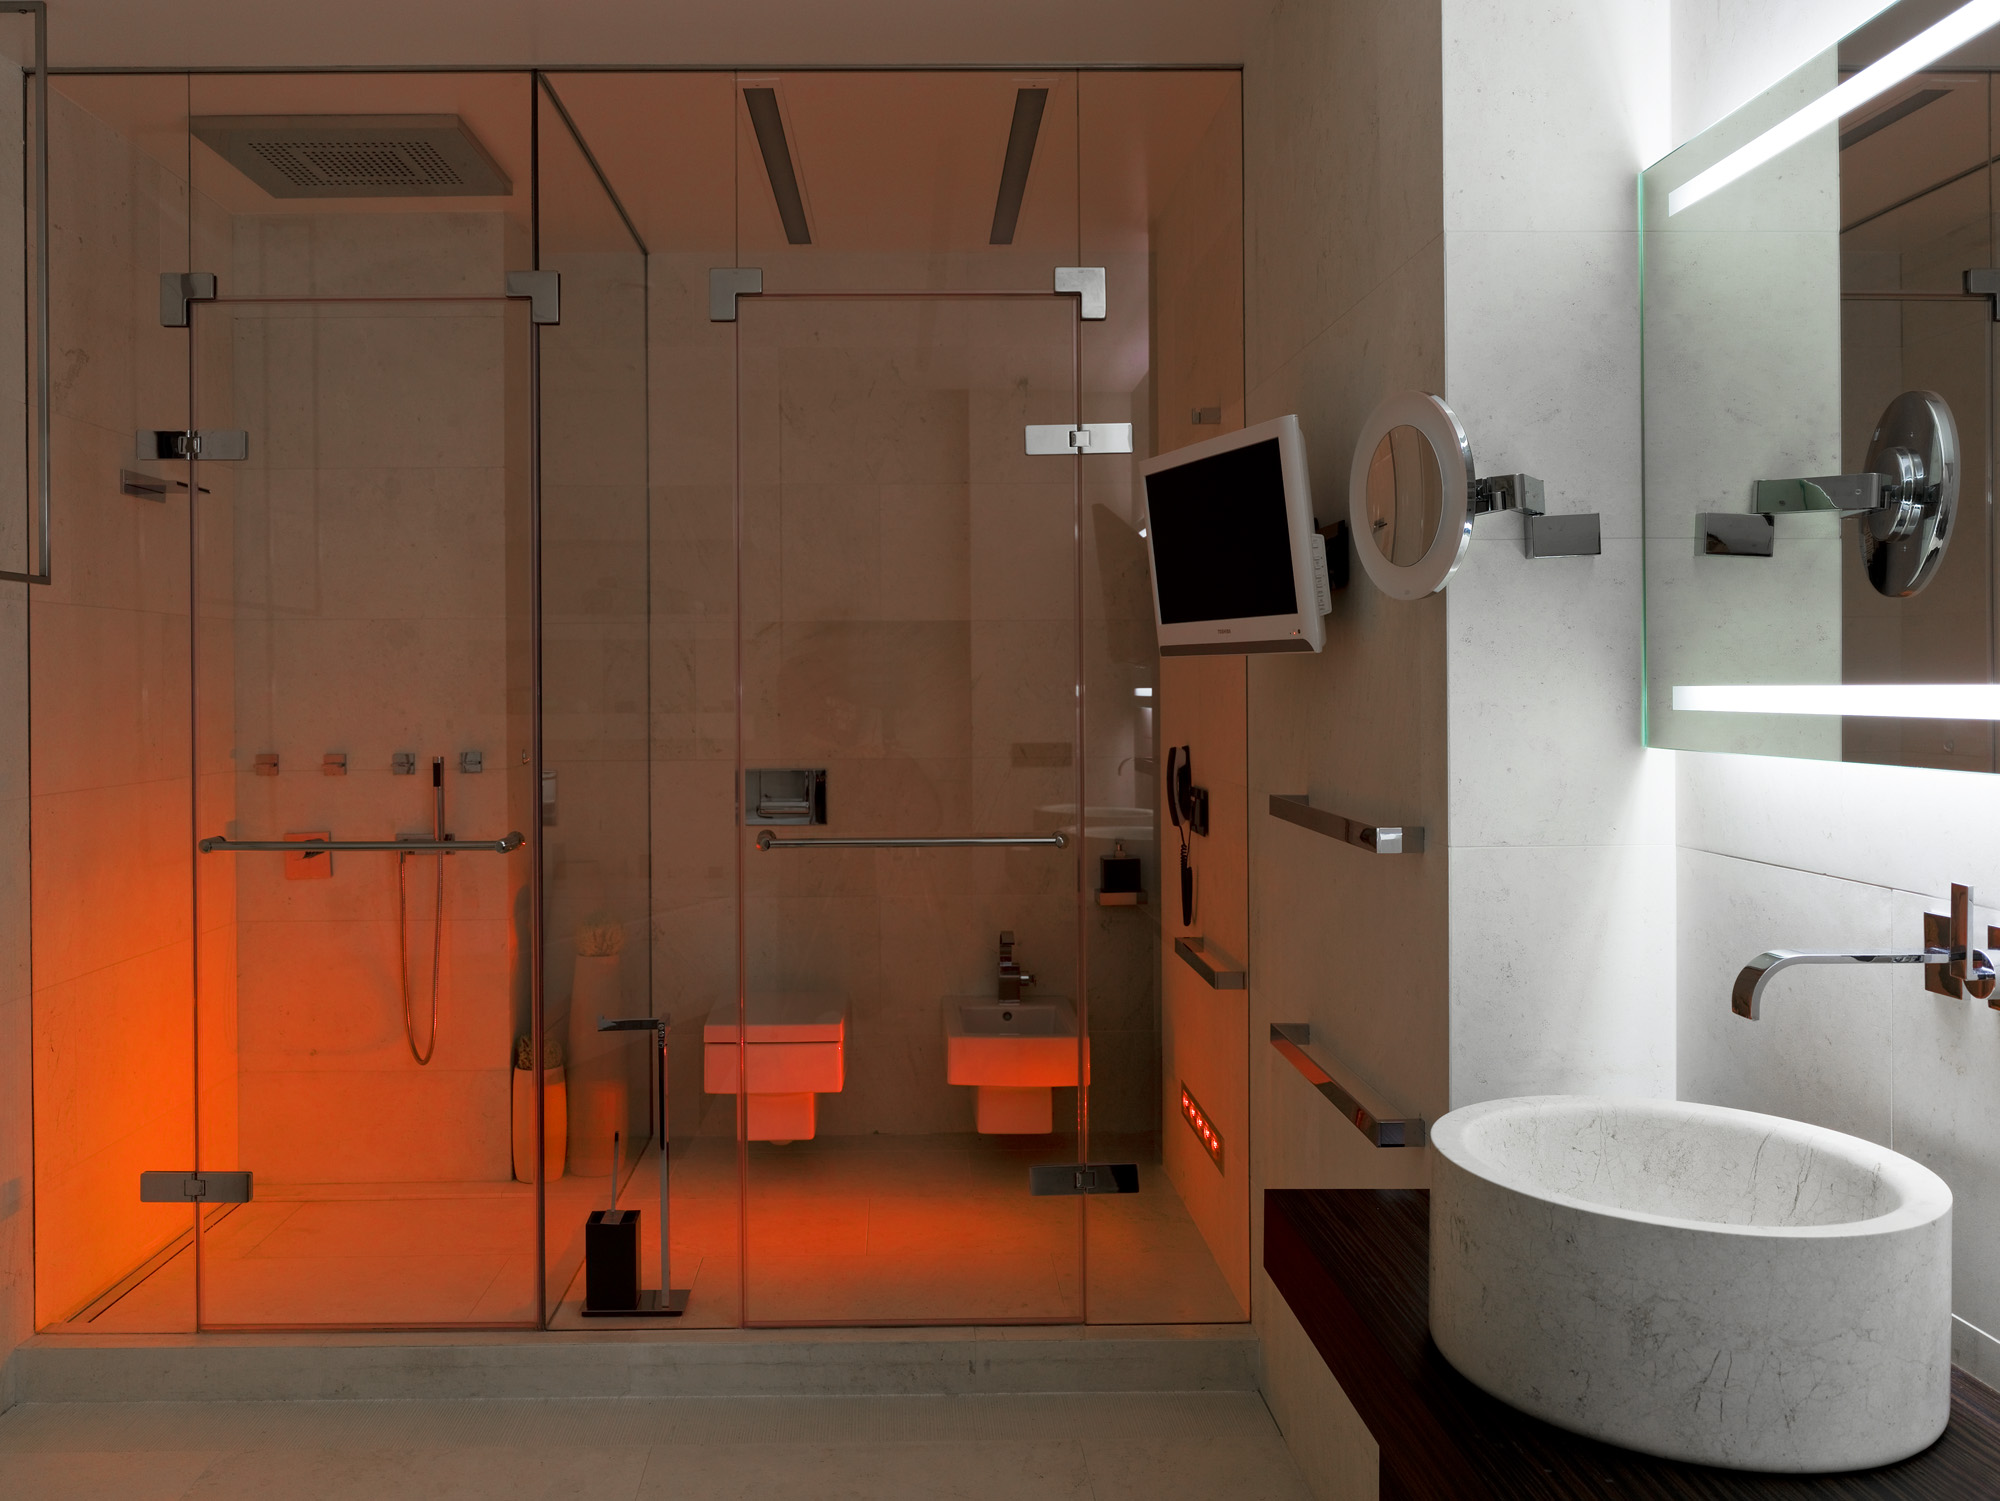 šviesaus stiliaus vonios kambarys su šviesiu dušu